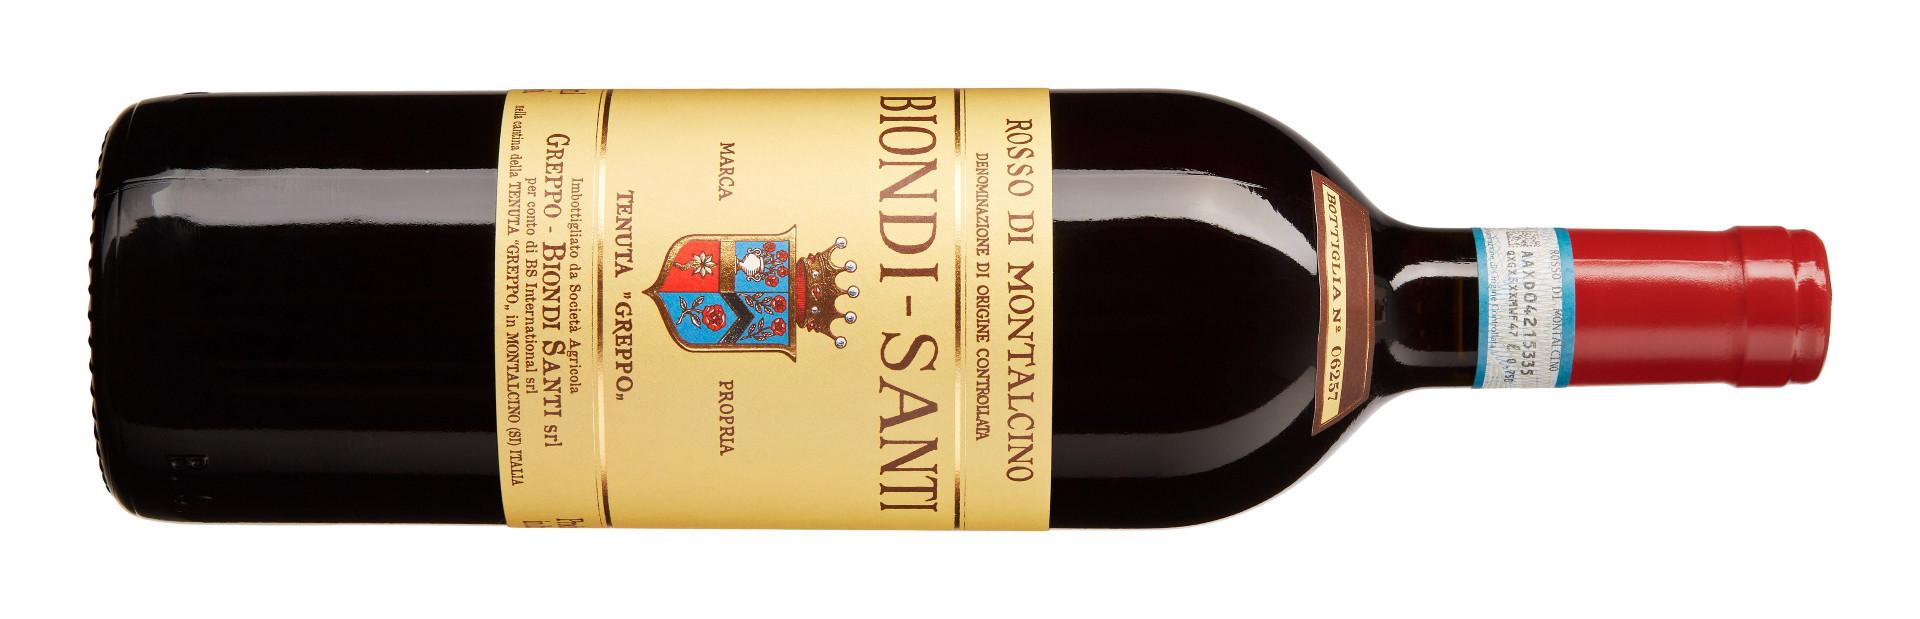 11929001 Bestillingsutvalget, lokale vinmonopol   Poeng 91 Land/region: Italia, Toscana Druesort: Brunello / Sangiovese Alkohol: 13,5 % Sukkerinnhold: <3 g/l